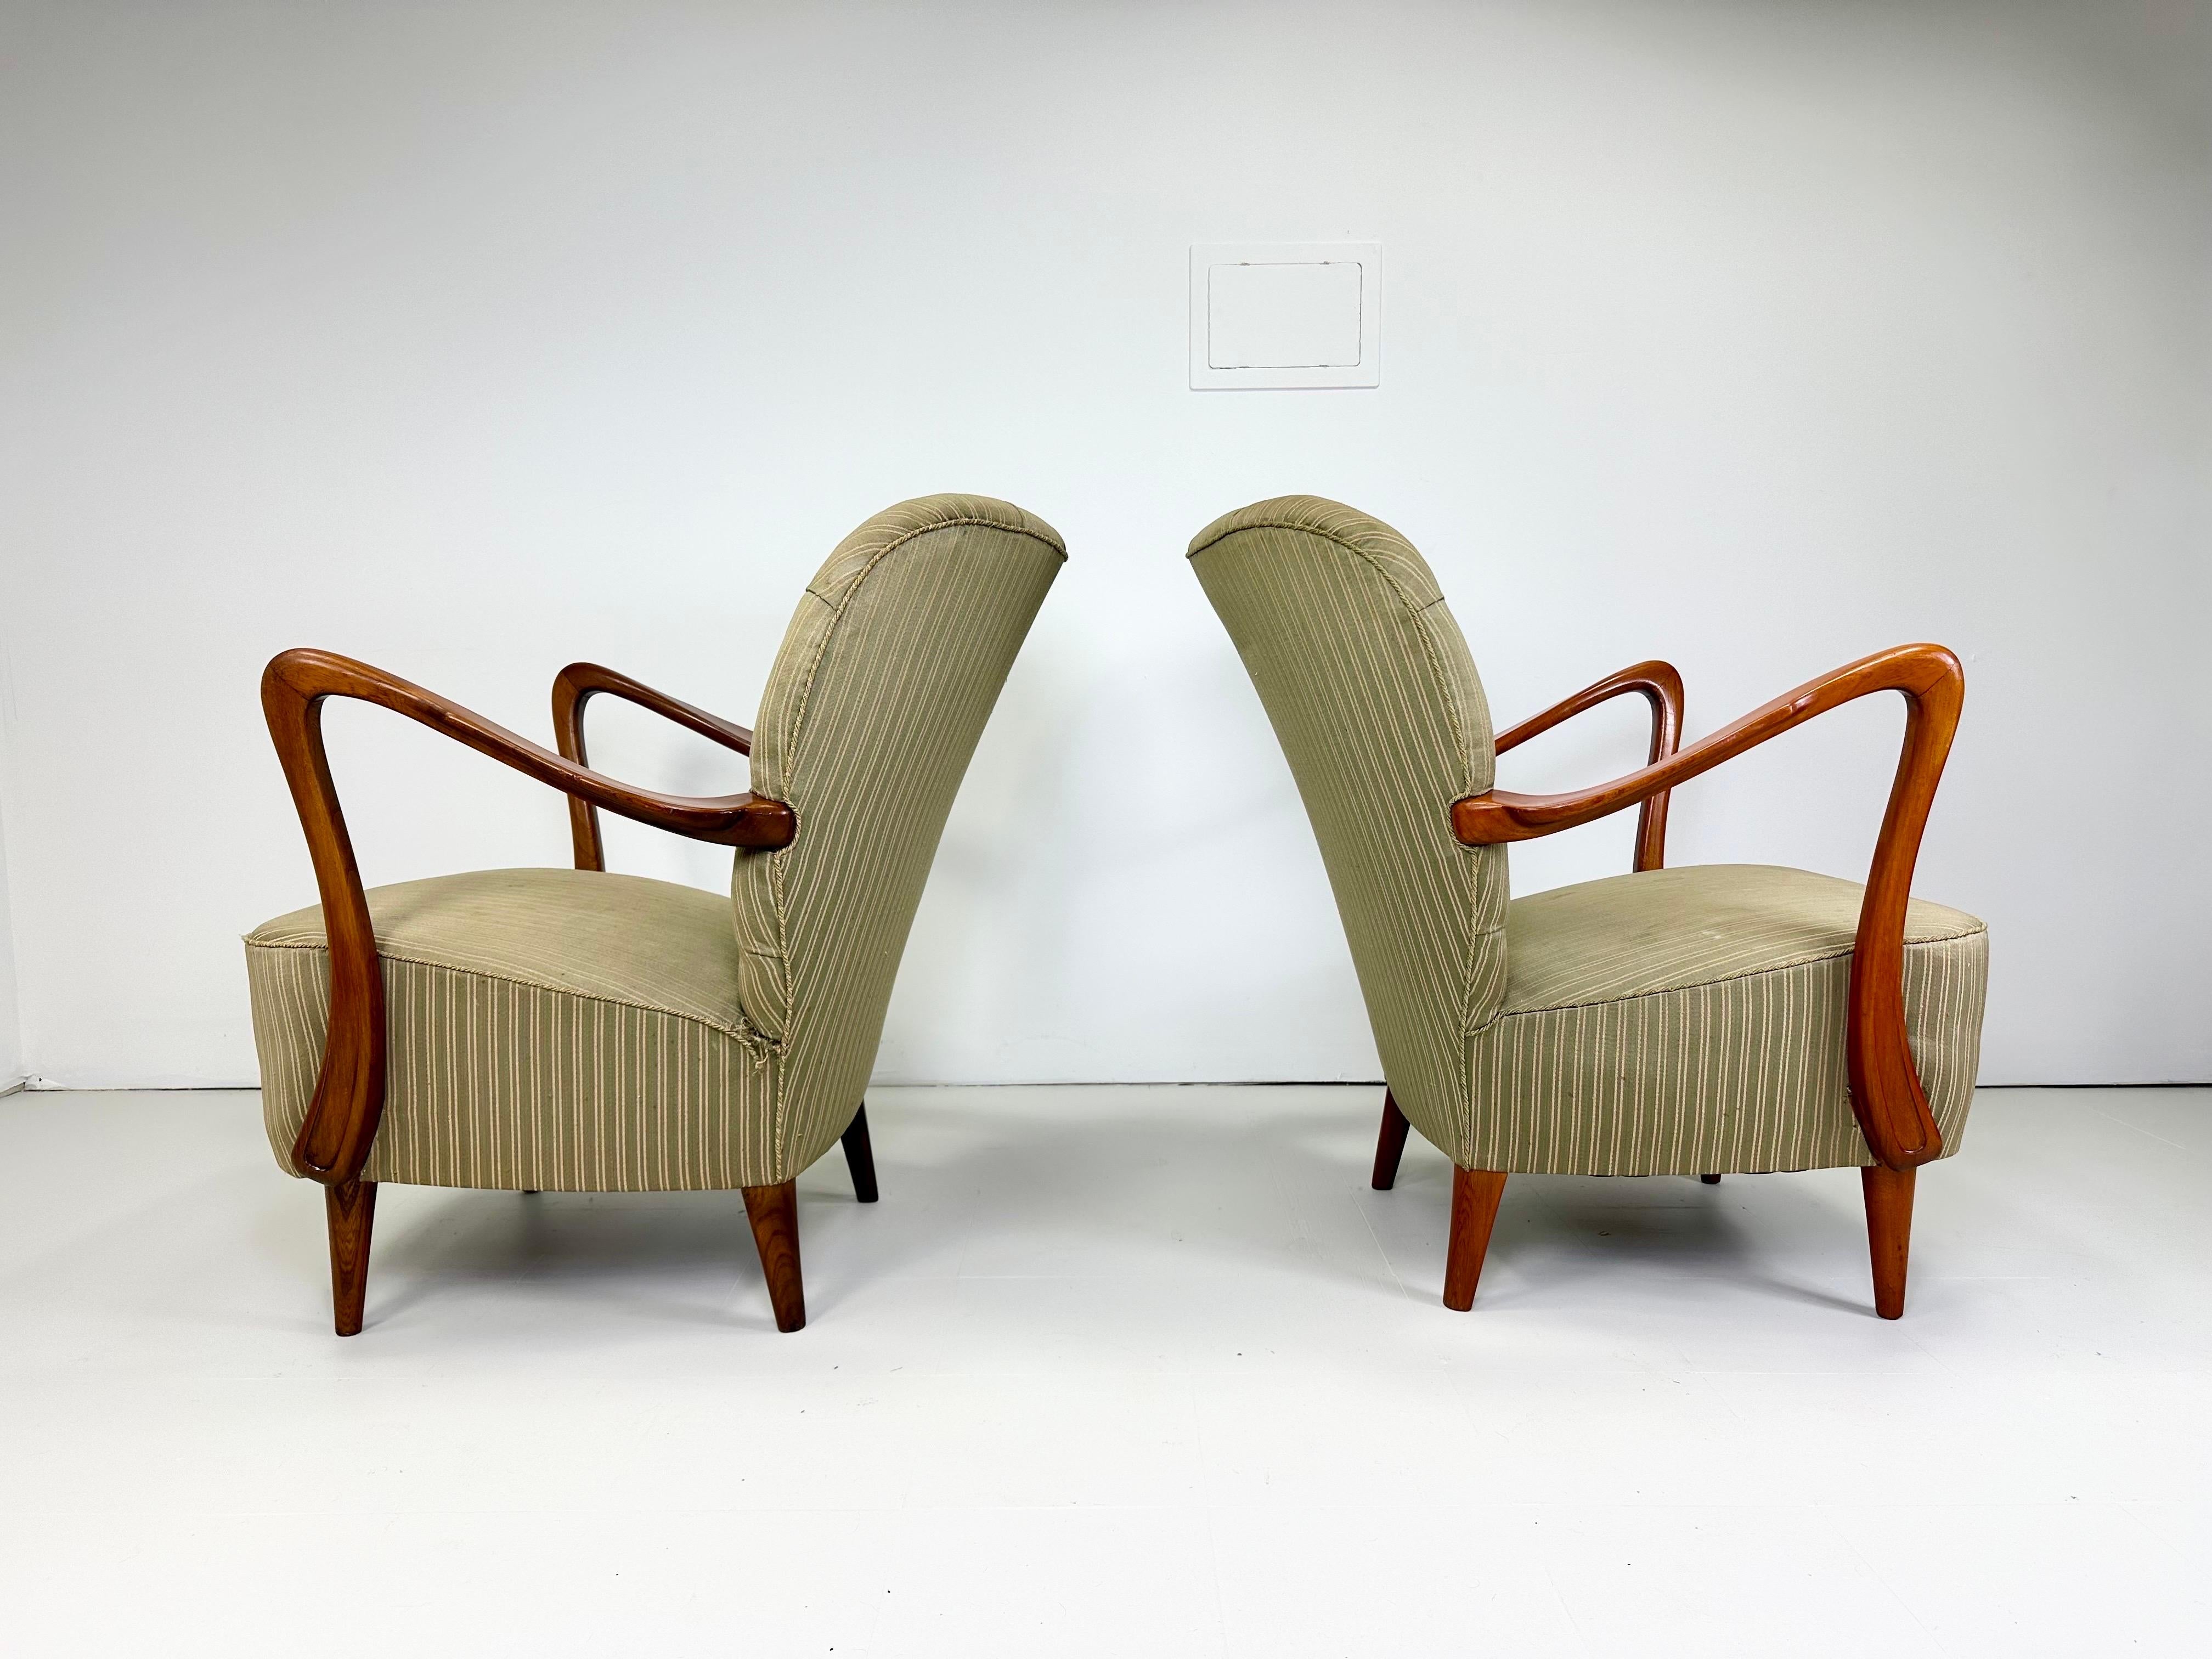 Paar schwedische Lounge-Stühle aus den 1940er Jahren. Wir lieben die skulpturalen, dramatischen Holzarme dieser Stühle. Getuftete Polsterung mit Knöpfen. Schweden,

Lieferung in den Großraum NYC für 450 $ möglich. Bitte anfragen 